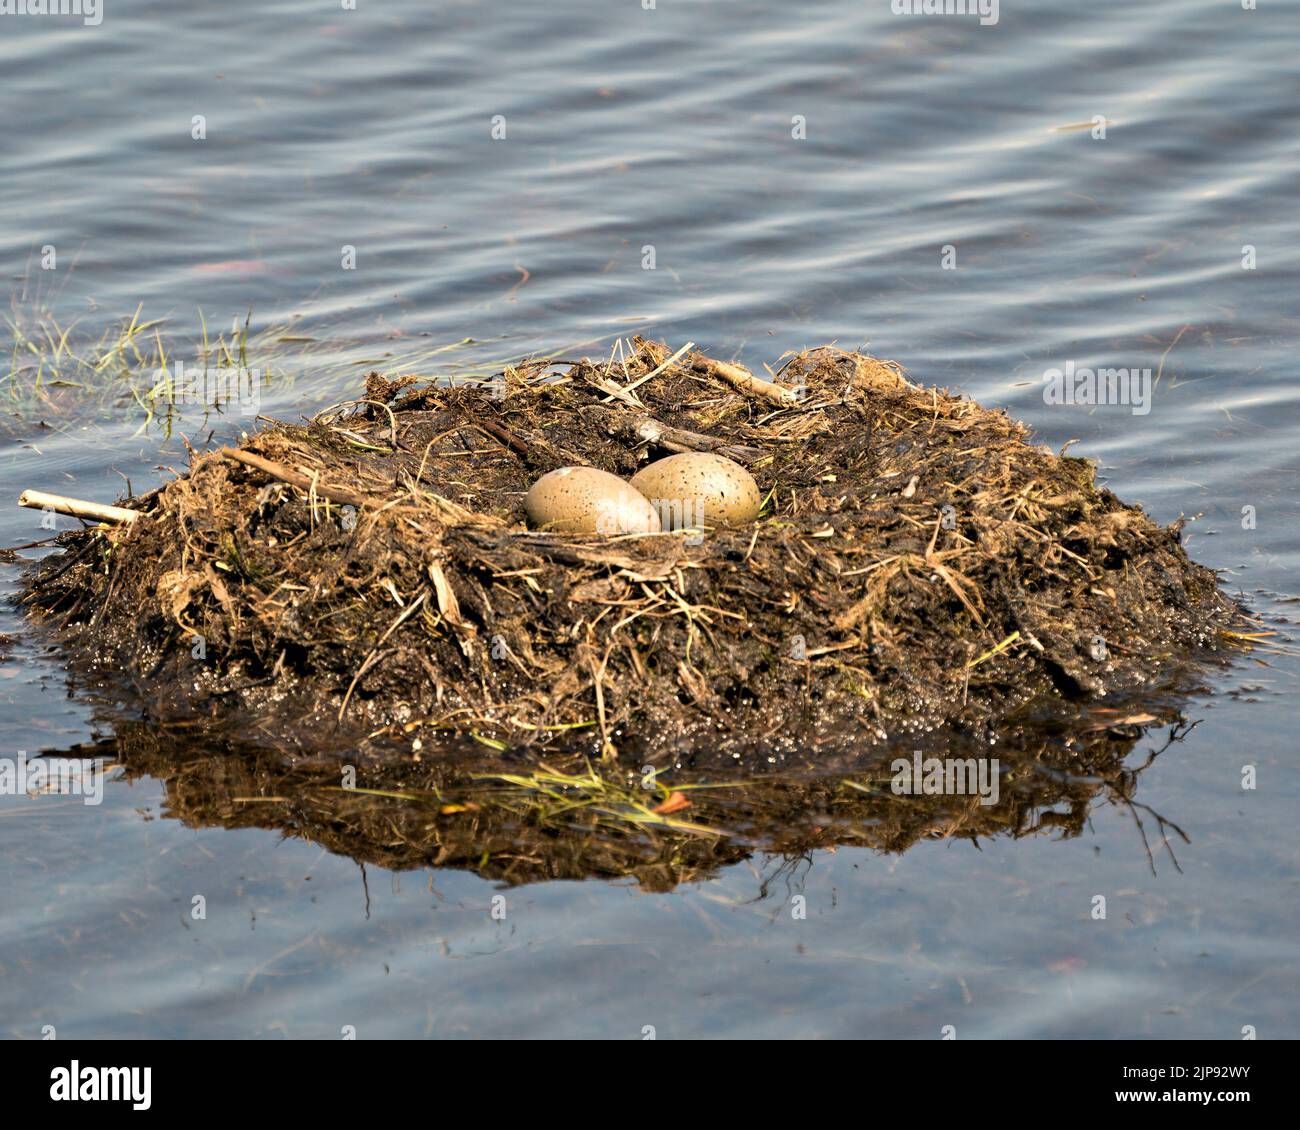 Uova di Loon comune e costruzione di nido con erbe paludose e fango sul lato del lago nel loro ambiente e habitat in un momento magico. Immagine. Foto Stock